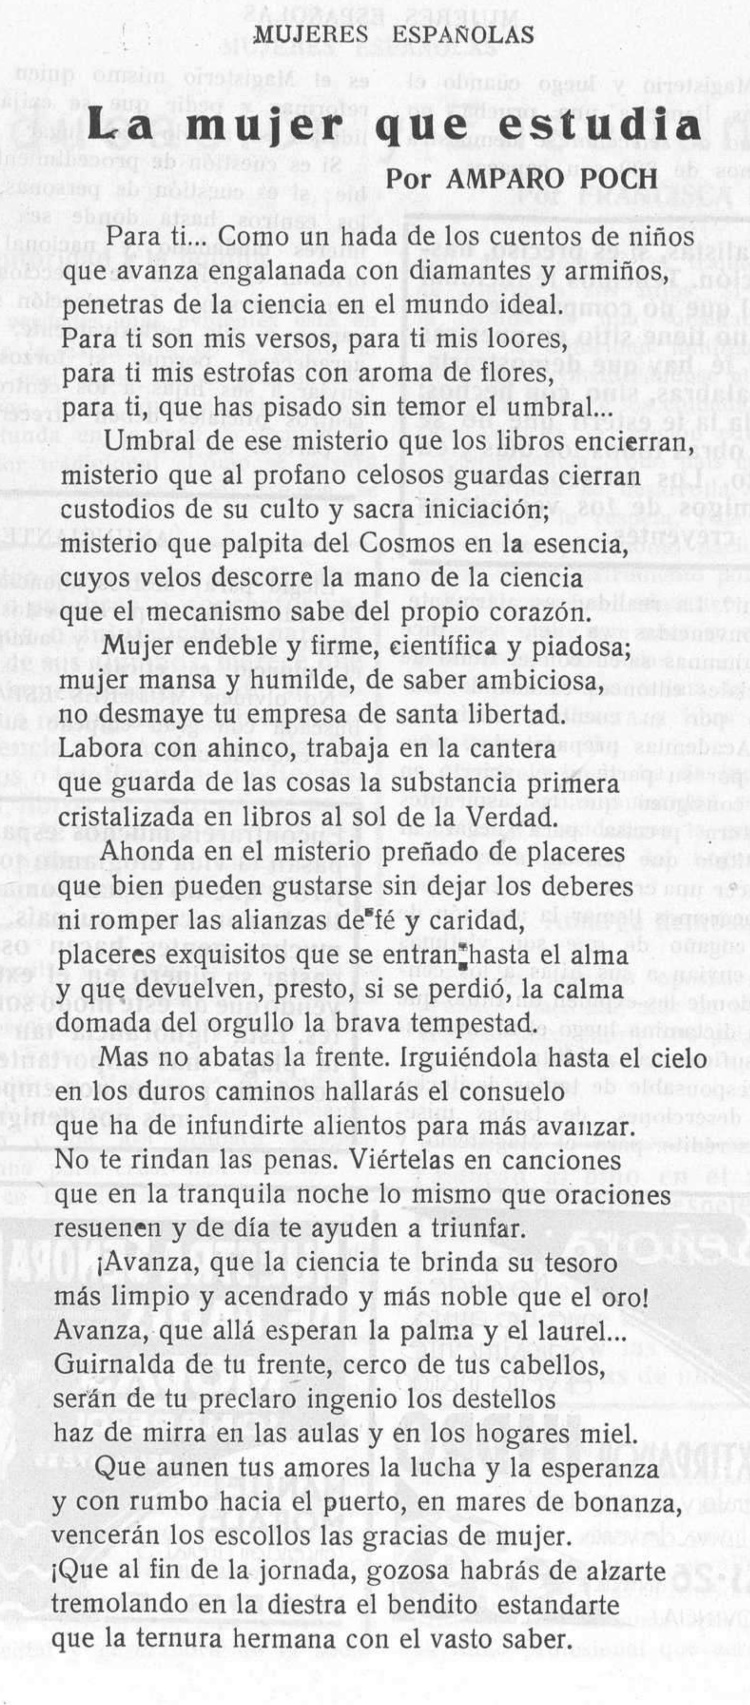 mujeres españolas. 2.3.1930. poesia